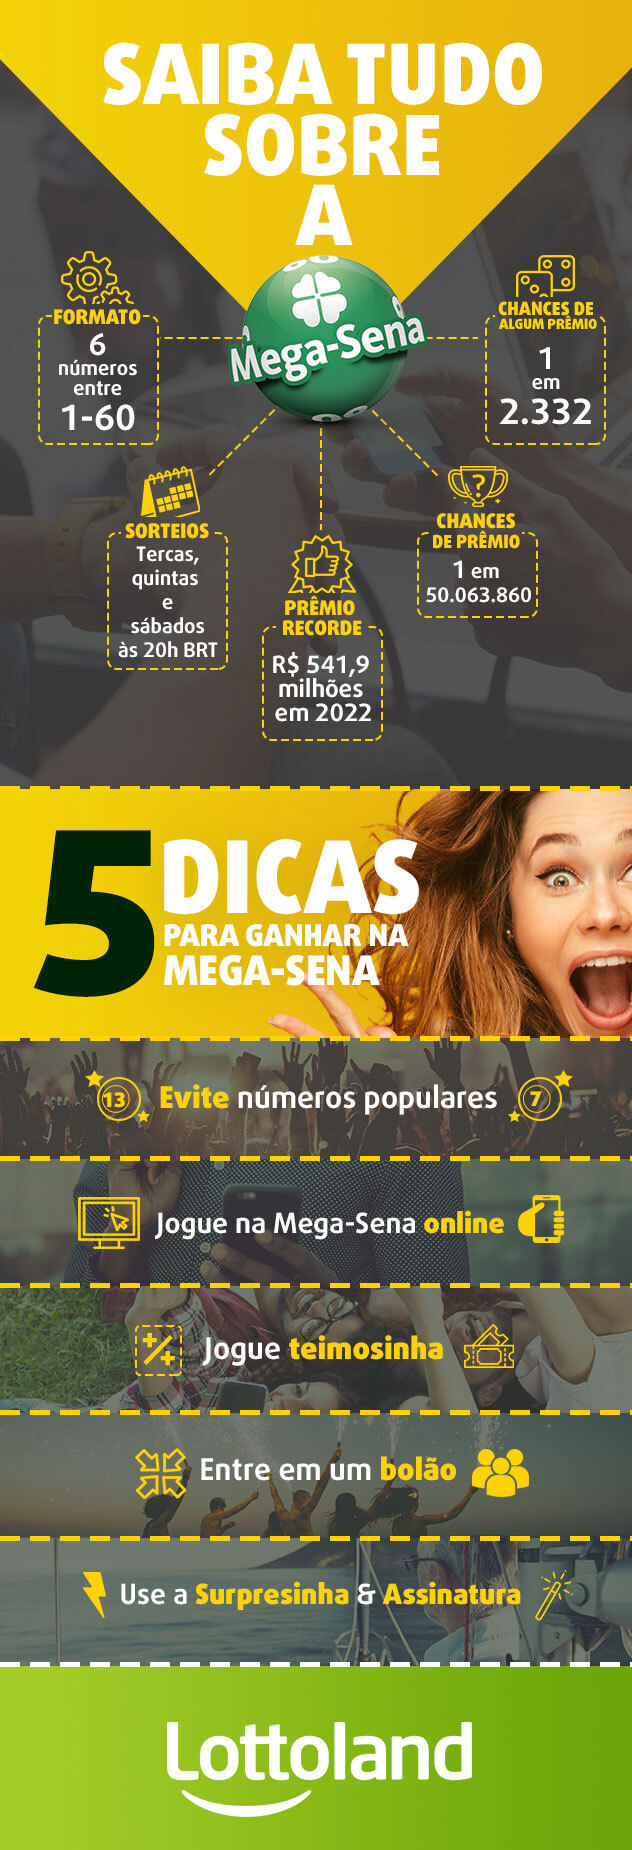 Infográfico com maiores prêmios da Mega Sena e dicas para ganhar